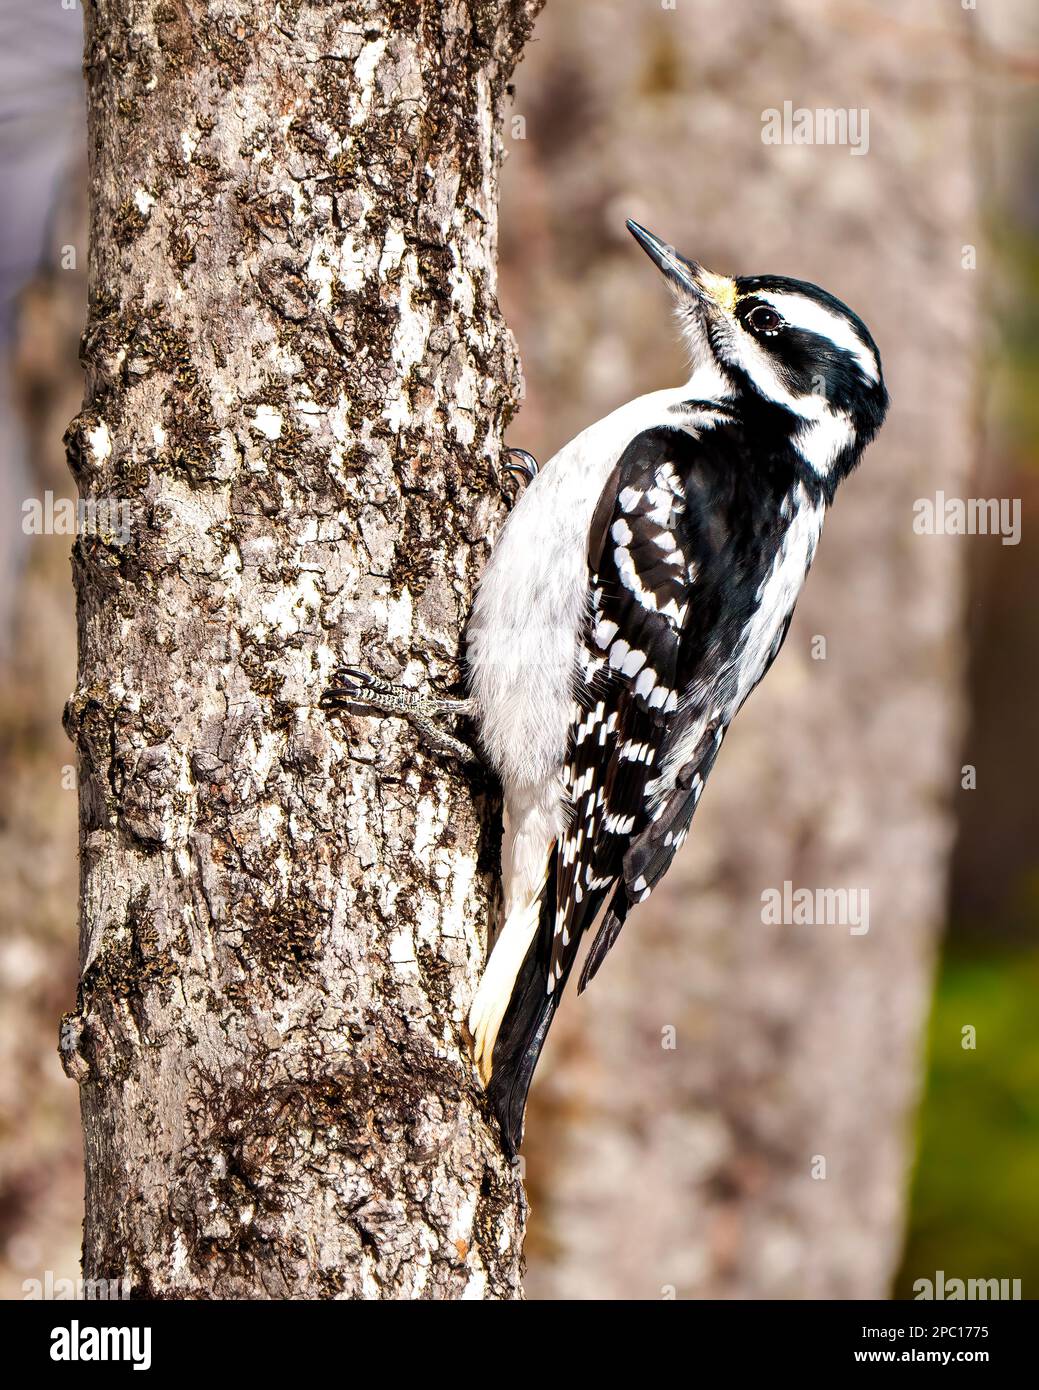 Holzspecht, weibliche Seitenansicht, die sich an einen Baumstamm hält und weiß-schwarzes Gefieder in seiner Umgebung und Umgebung zeigt. Stockfoto